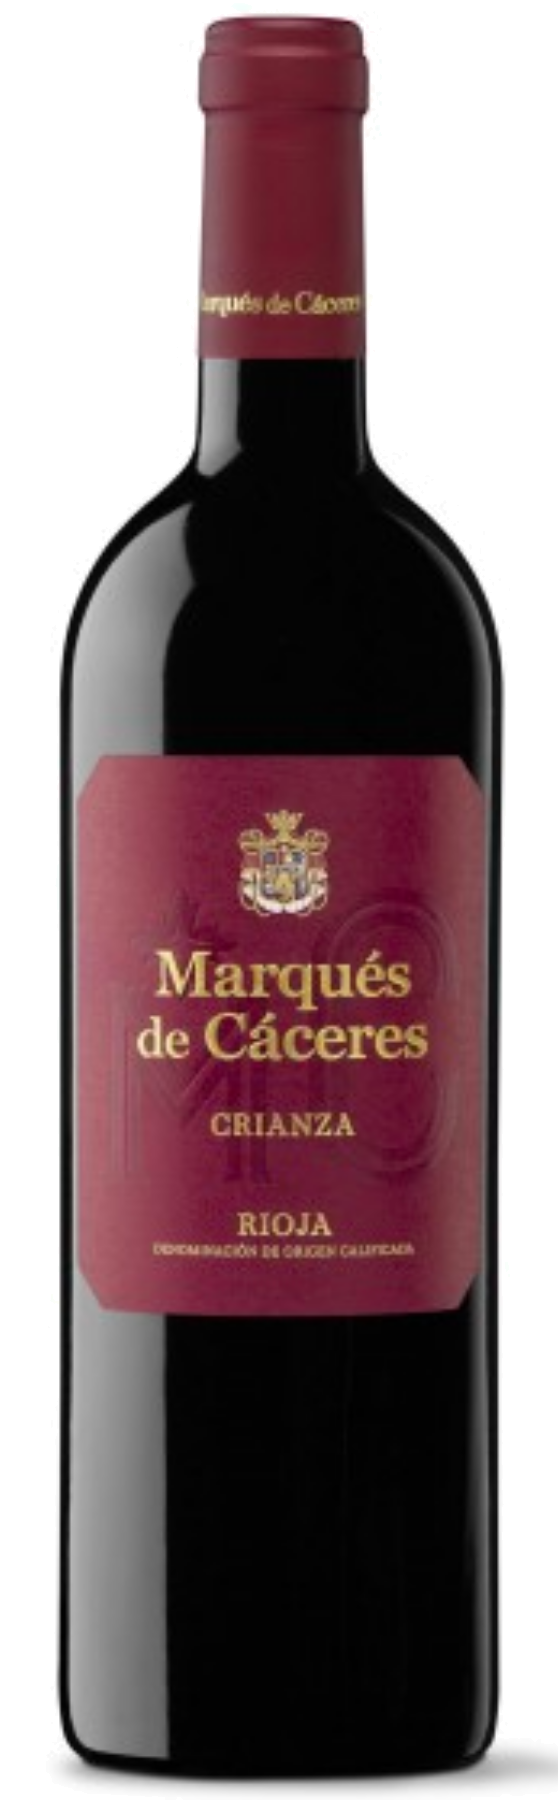 Marqués de Cáceres Crianza Rioja